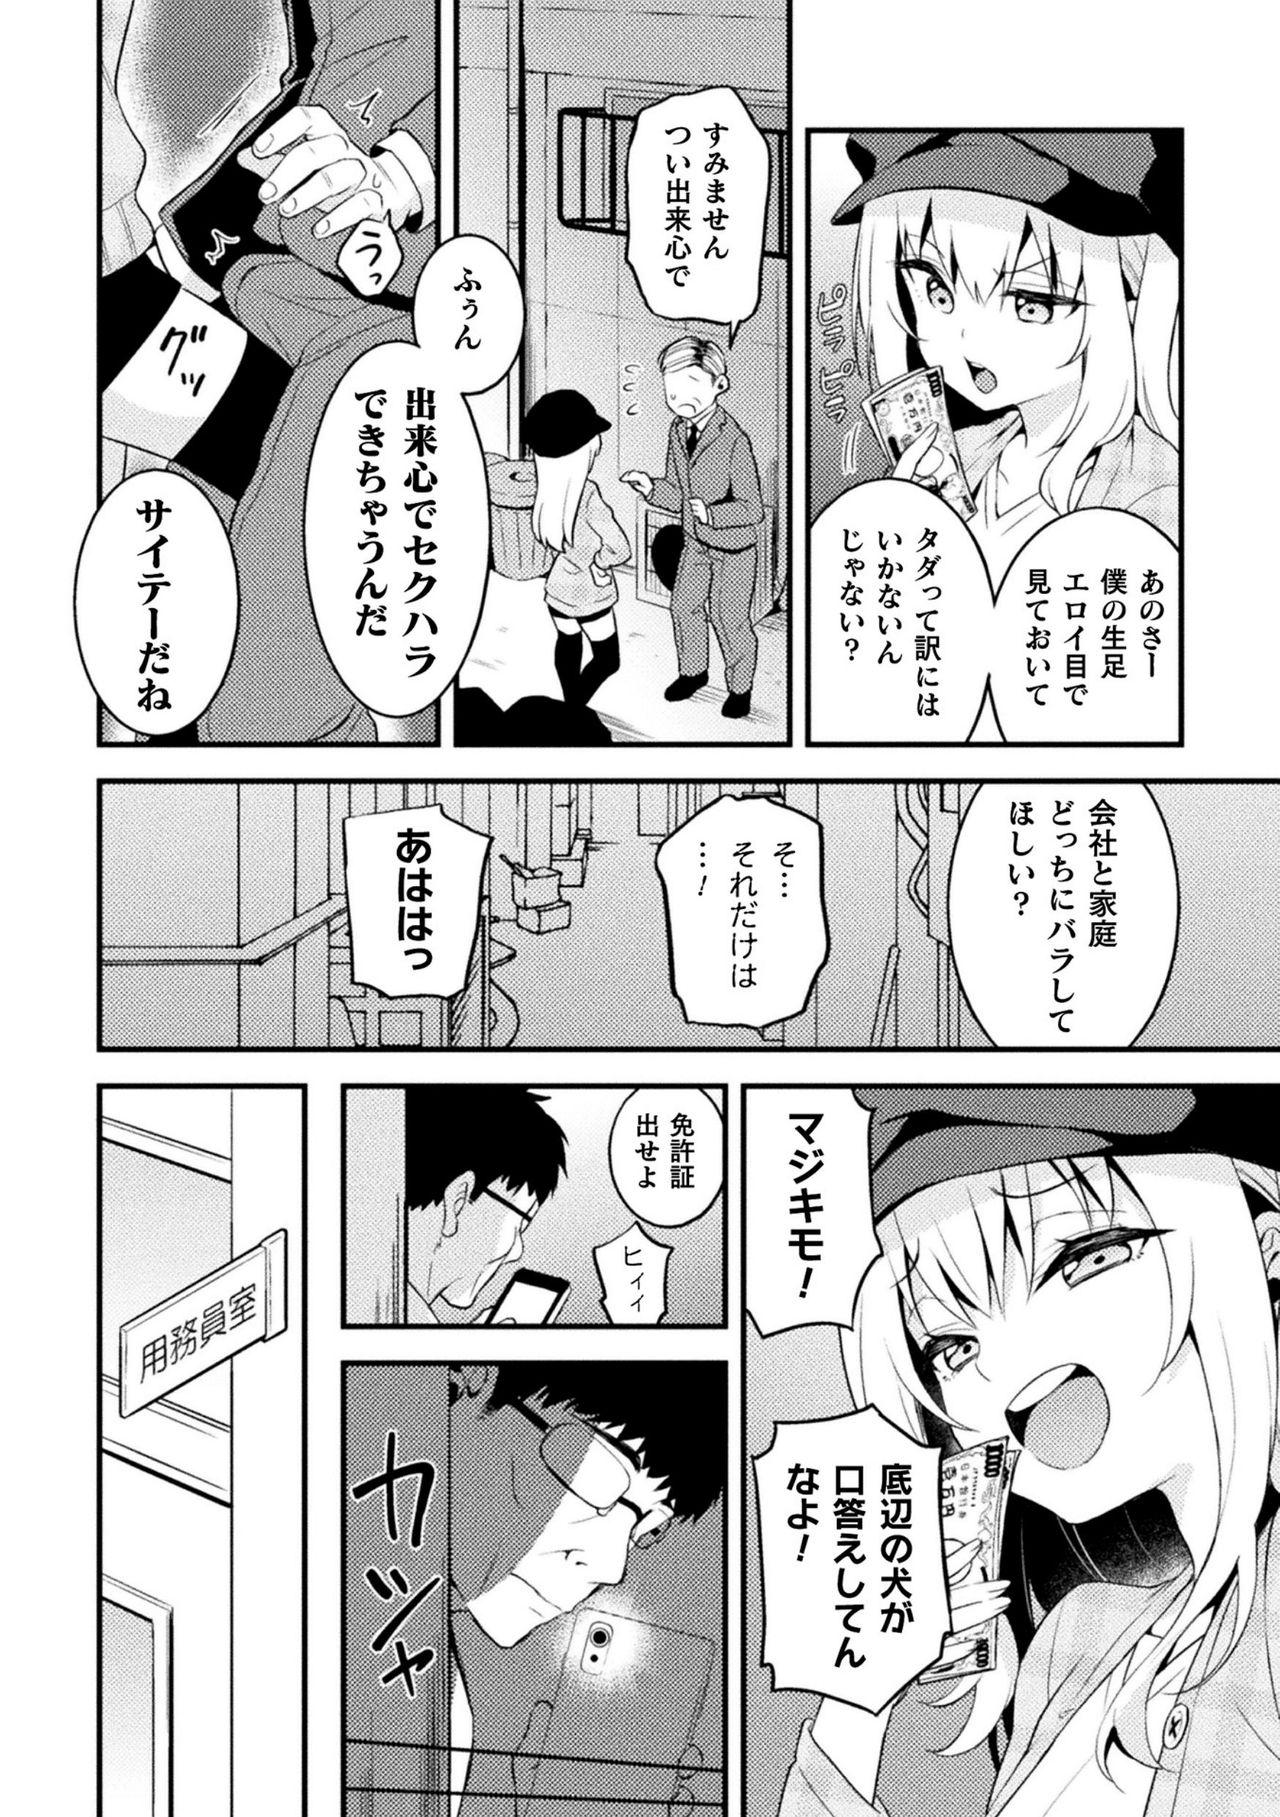 2D Comic Magazine Mesugaki Otokonoko Seisai Ikiru Shiriana o Wakarase Bou de Goshidou Gobentatsu! Vol. 2 67